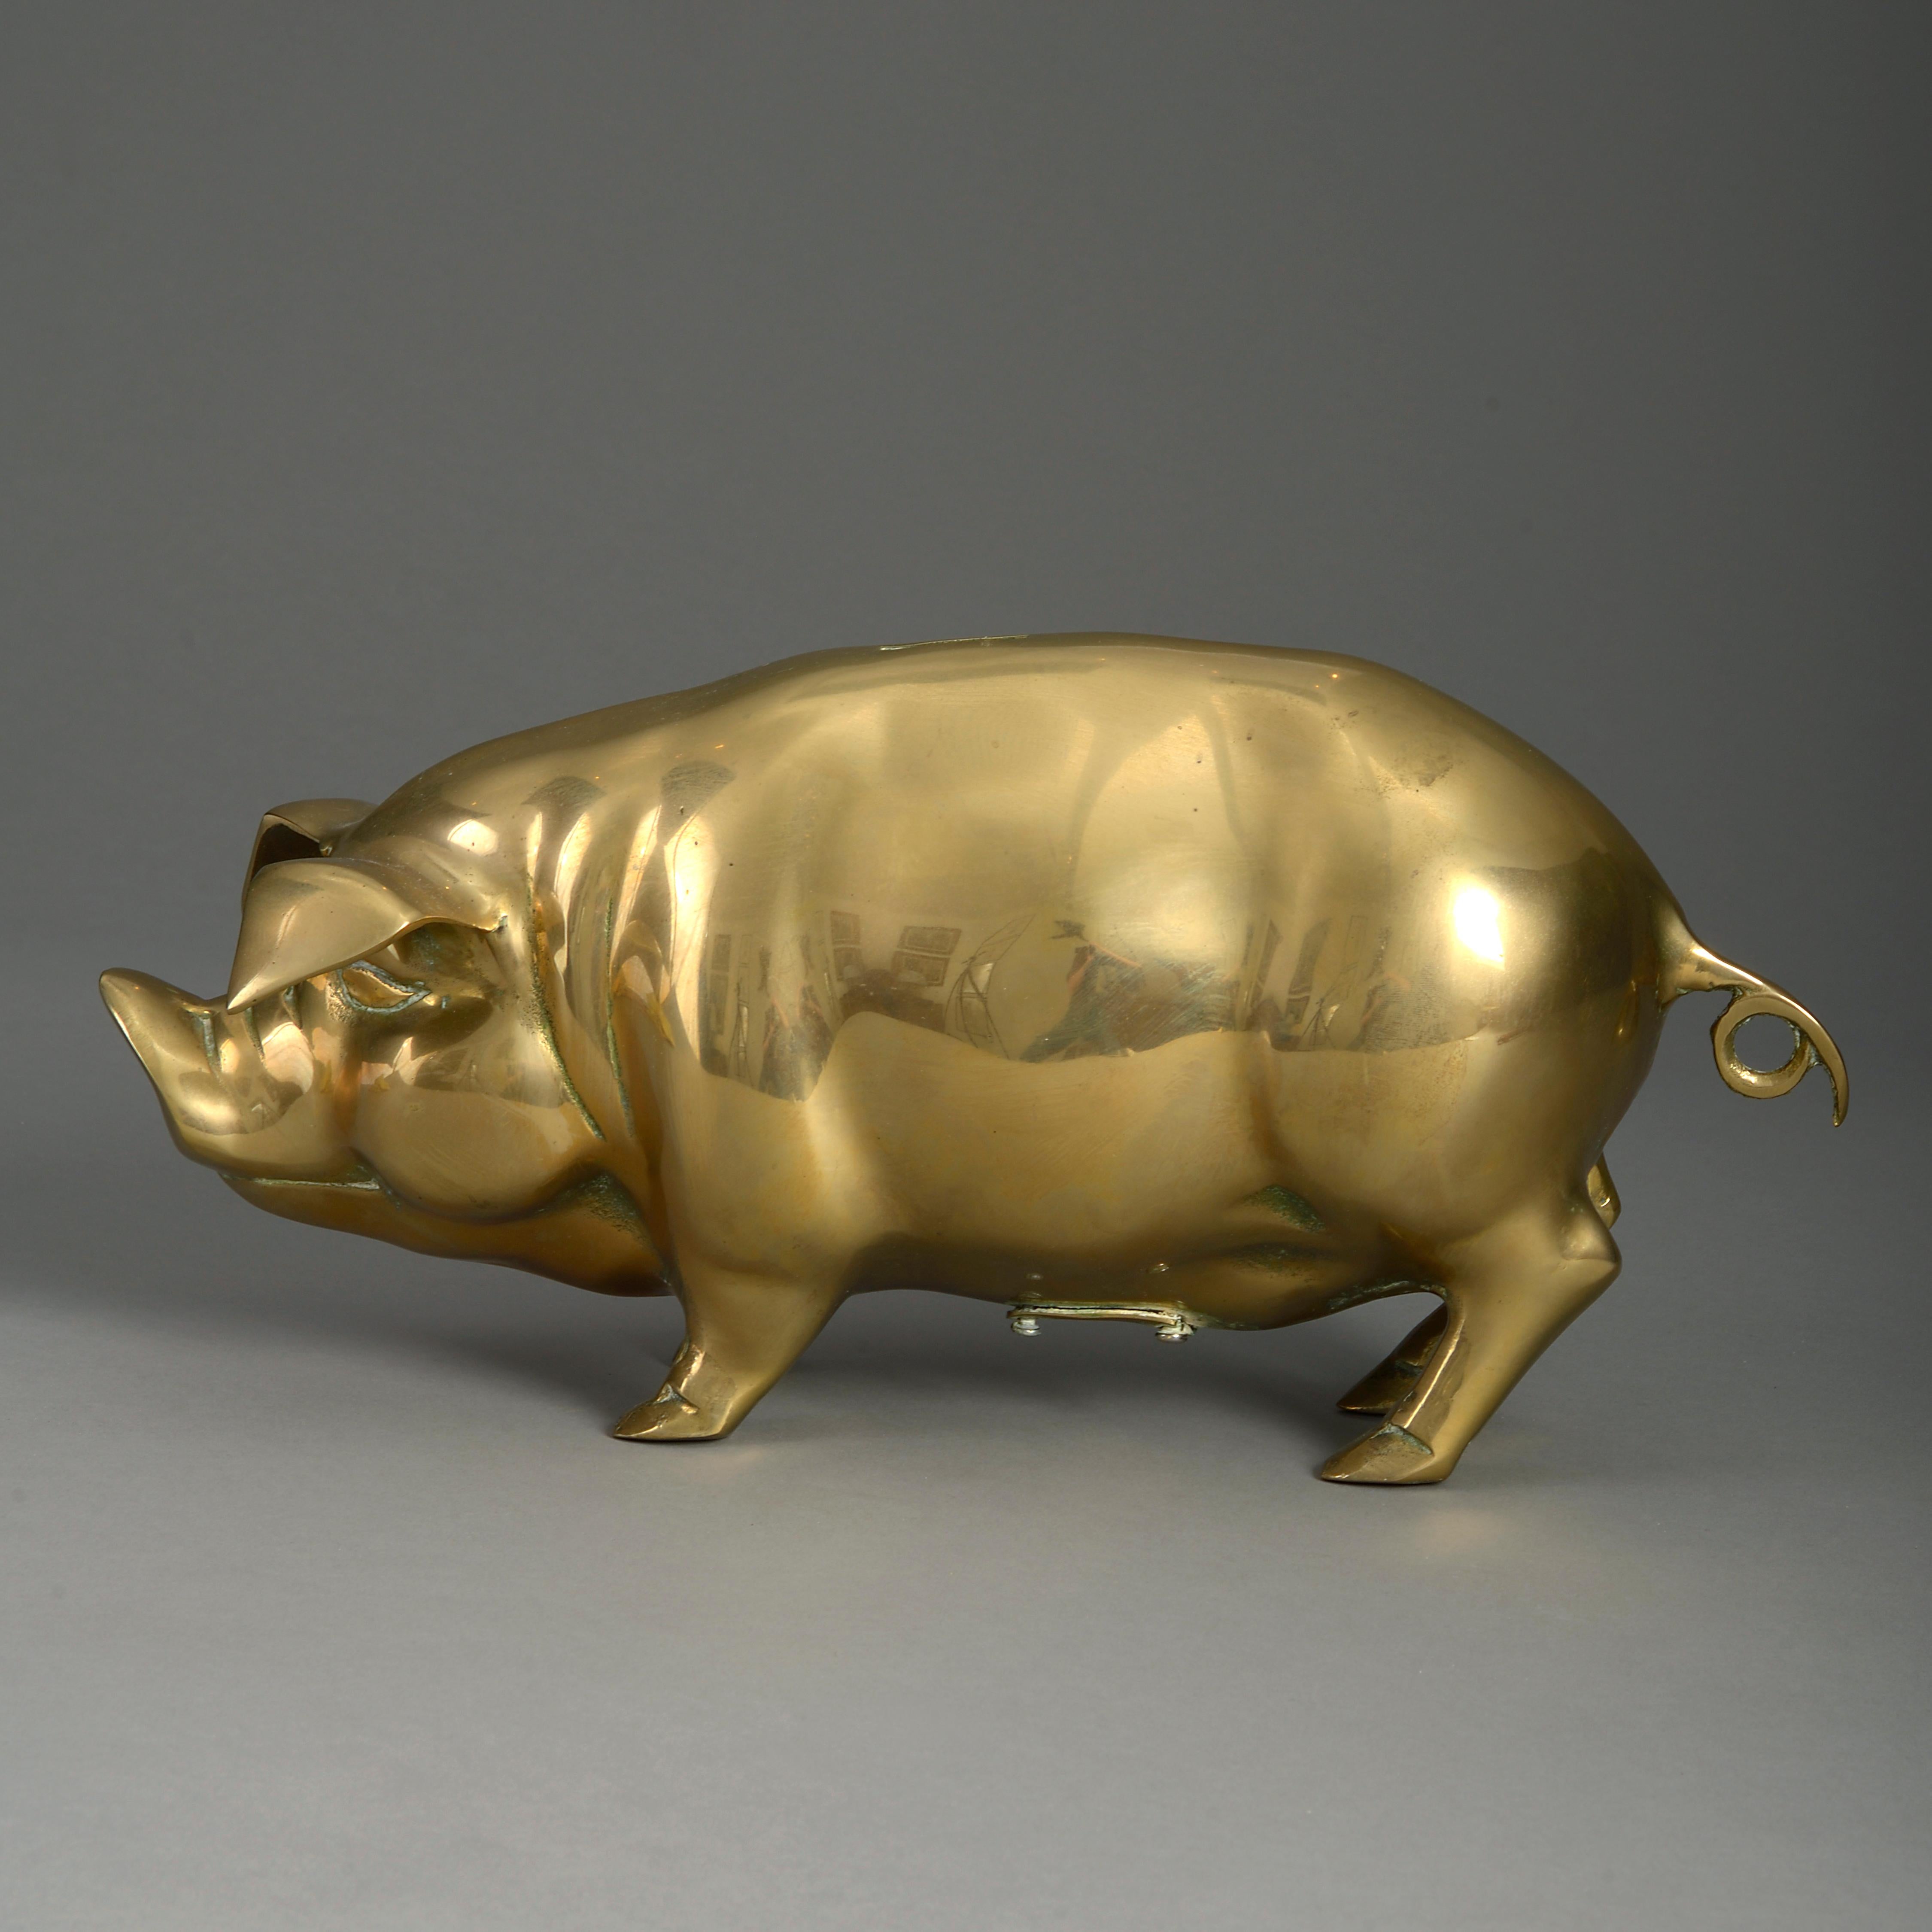 An early 20th century brass piggy bank.